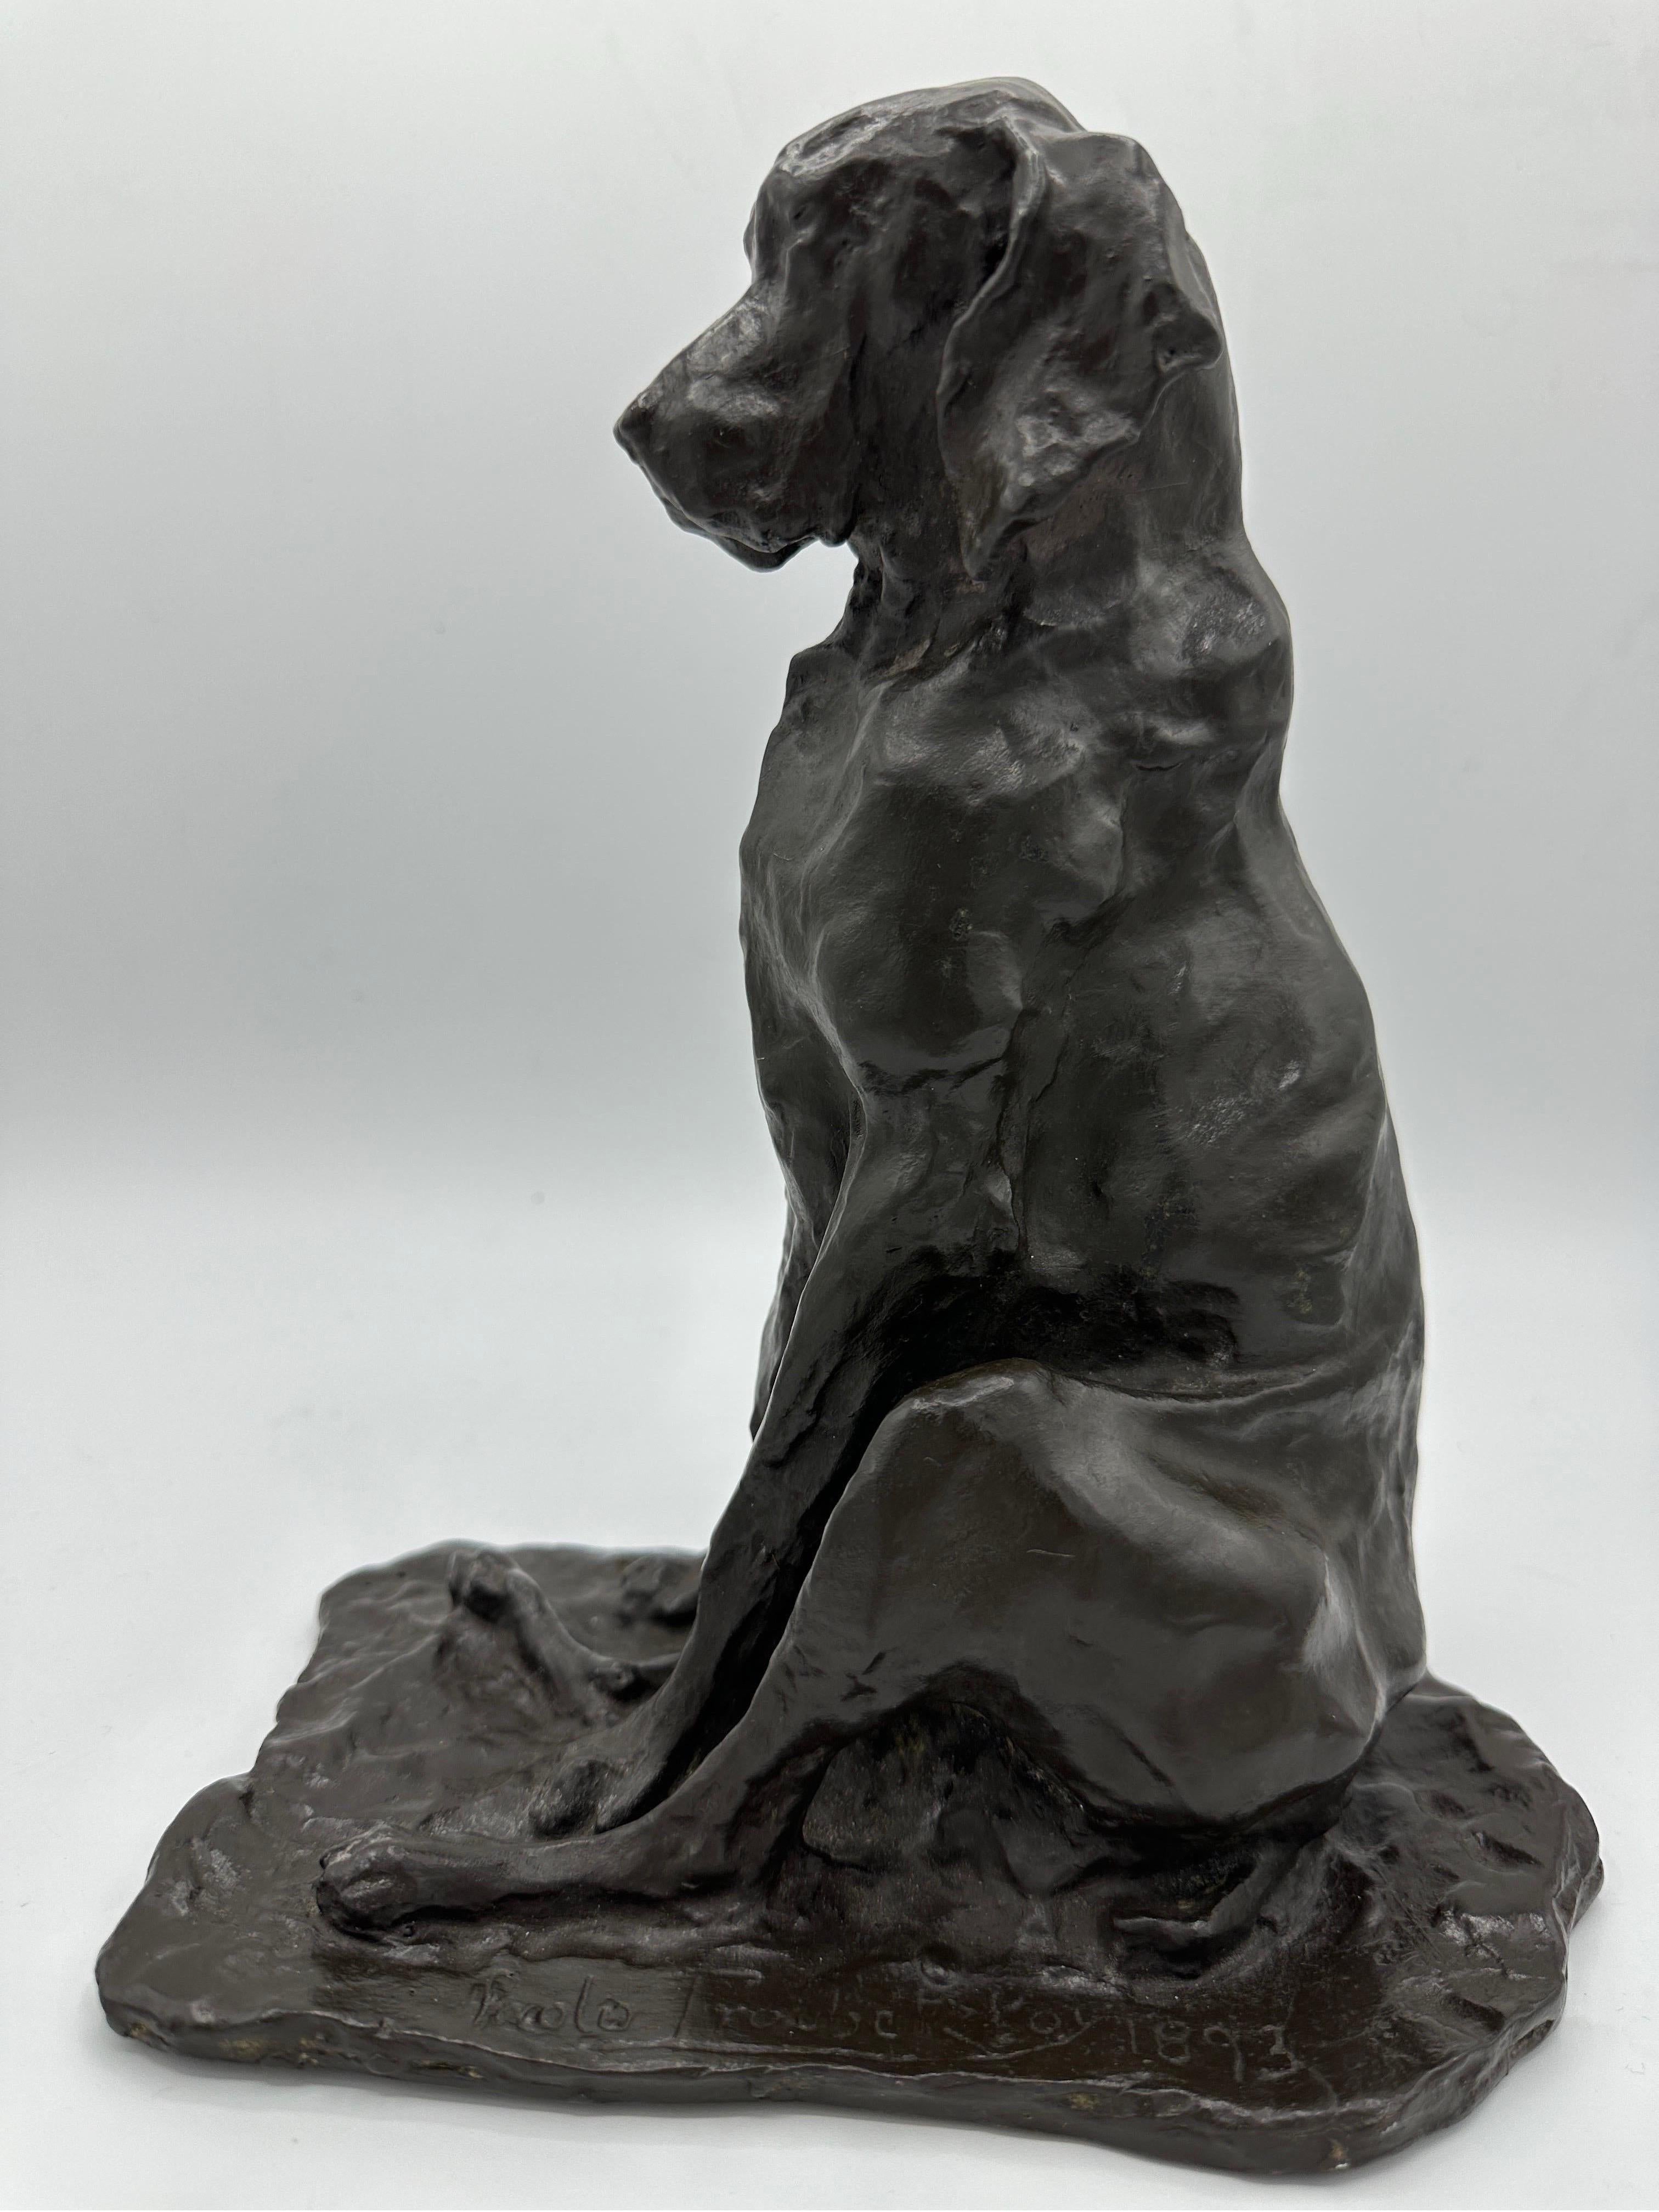 Figurative Sculpture Prince Paul Troubetzkoy - Figurine animalière en bronze de la fin du XIXe siècle représentant un chien courant assis